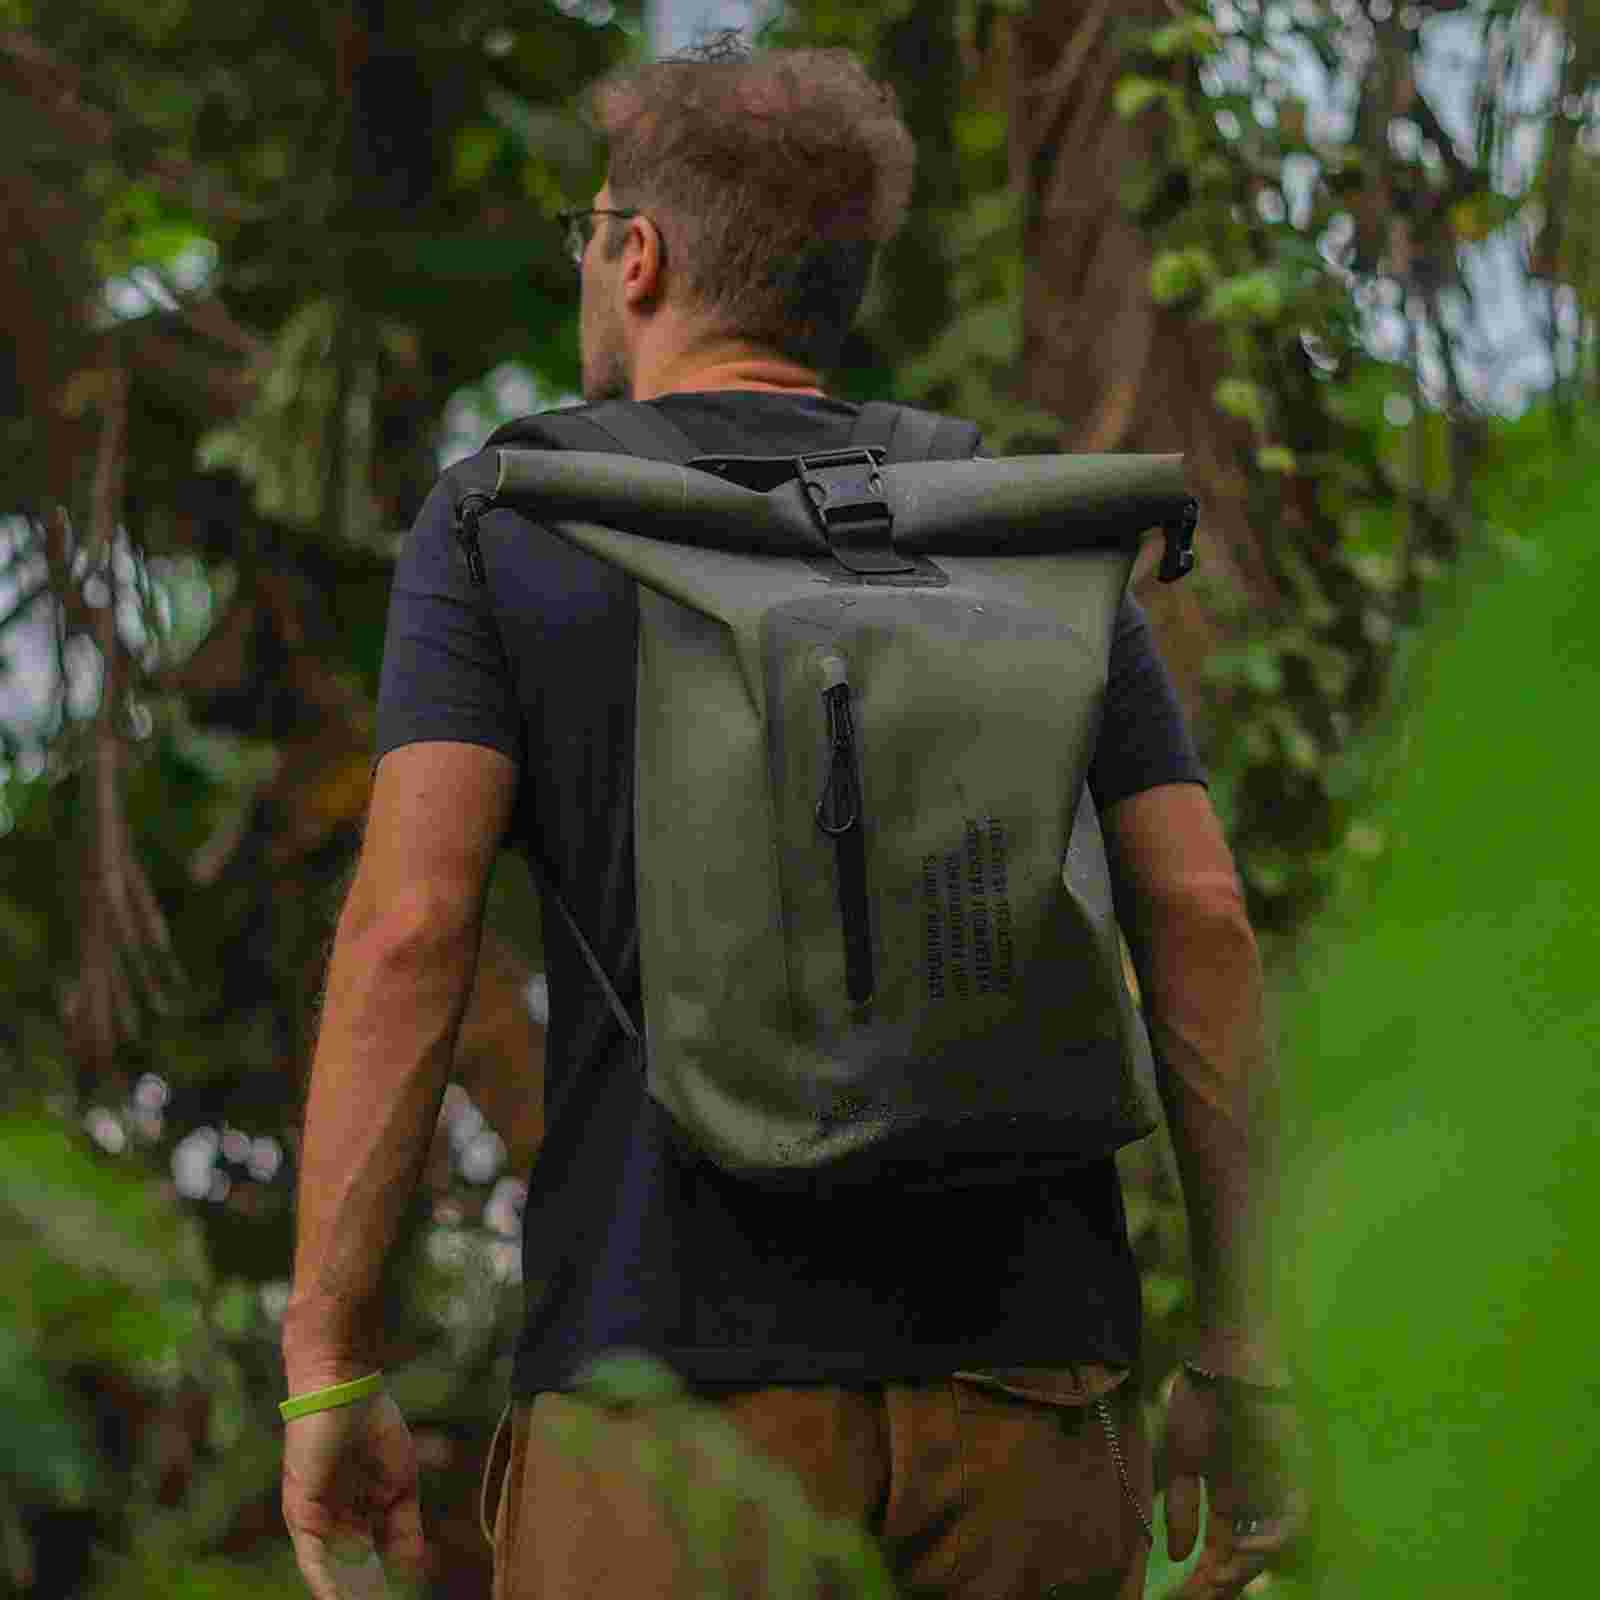 Man hiking with waterproof bag